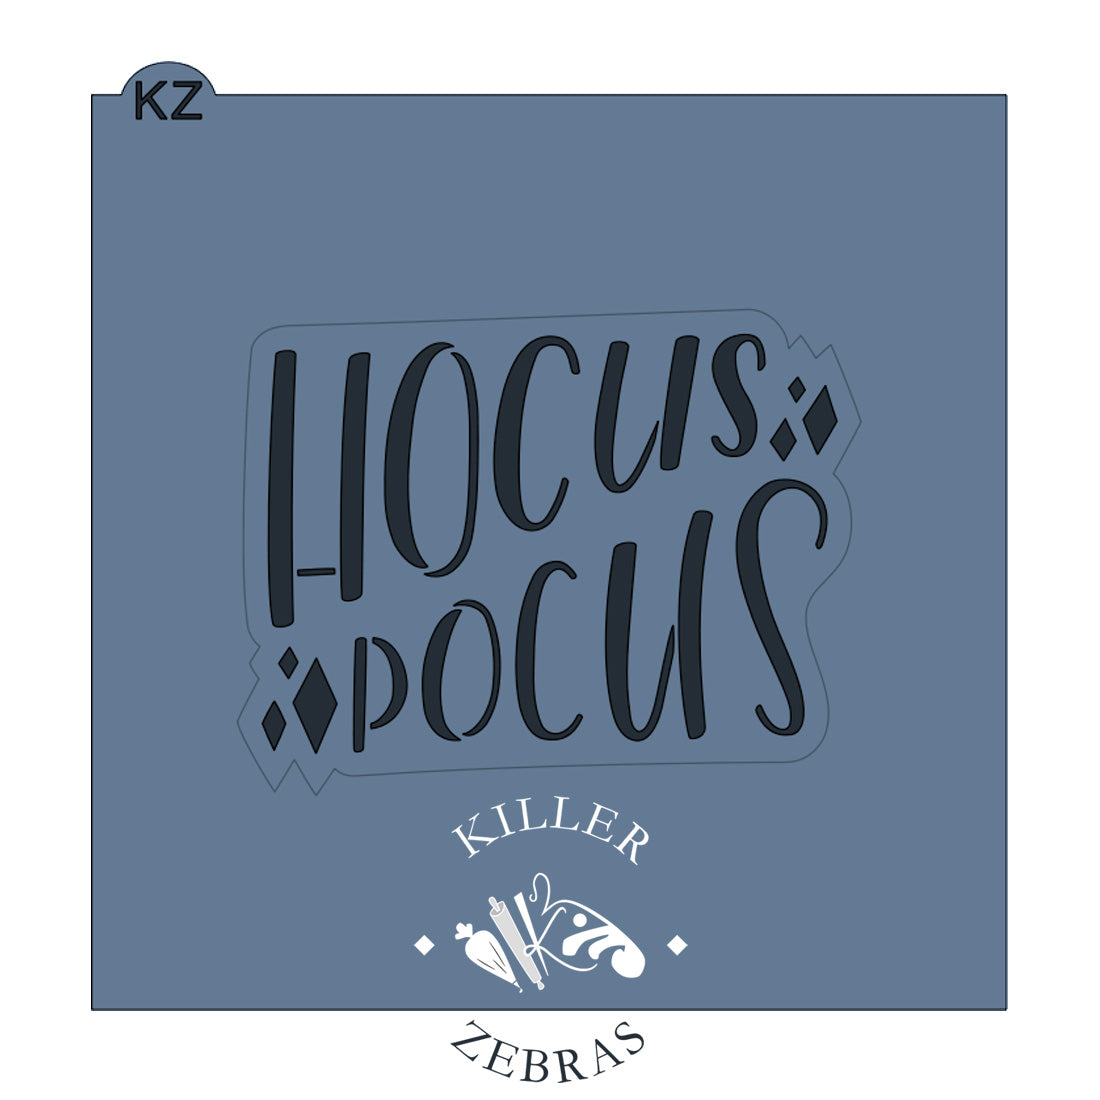 Hocus Pocus Hand Lettered